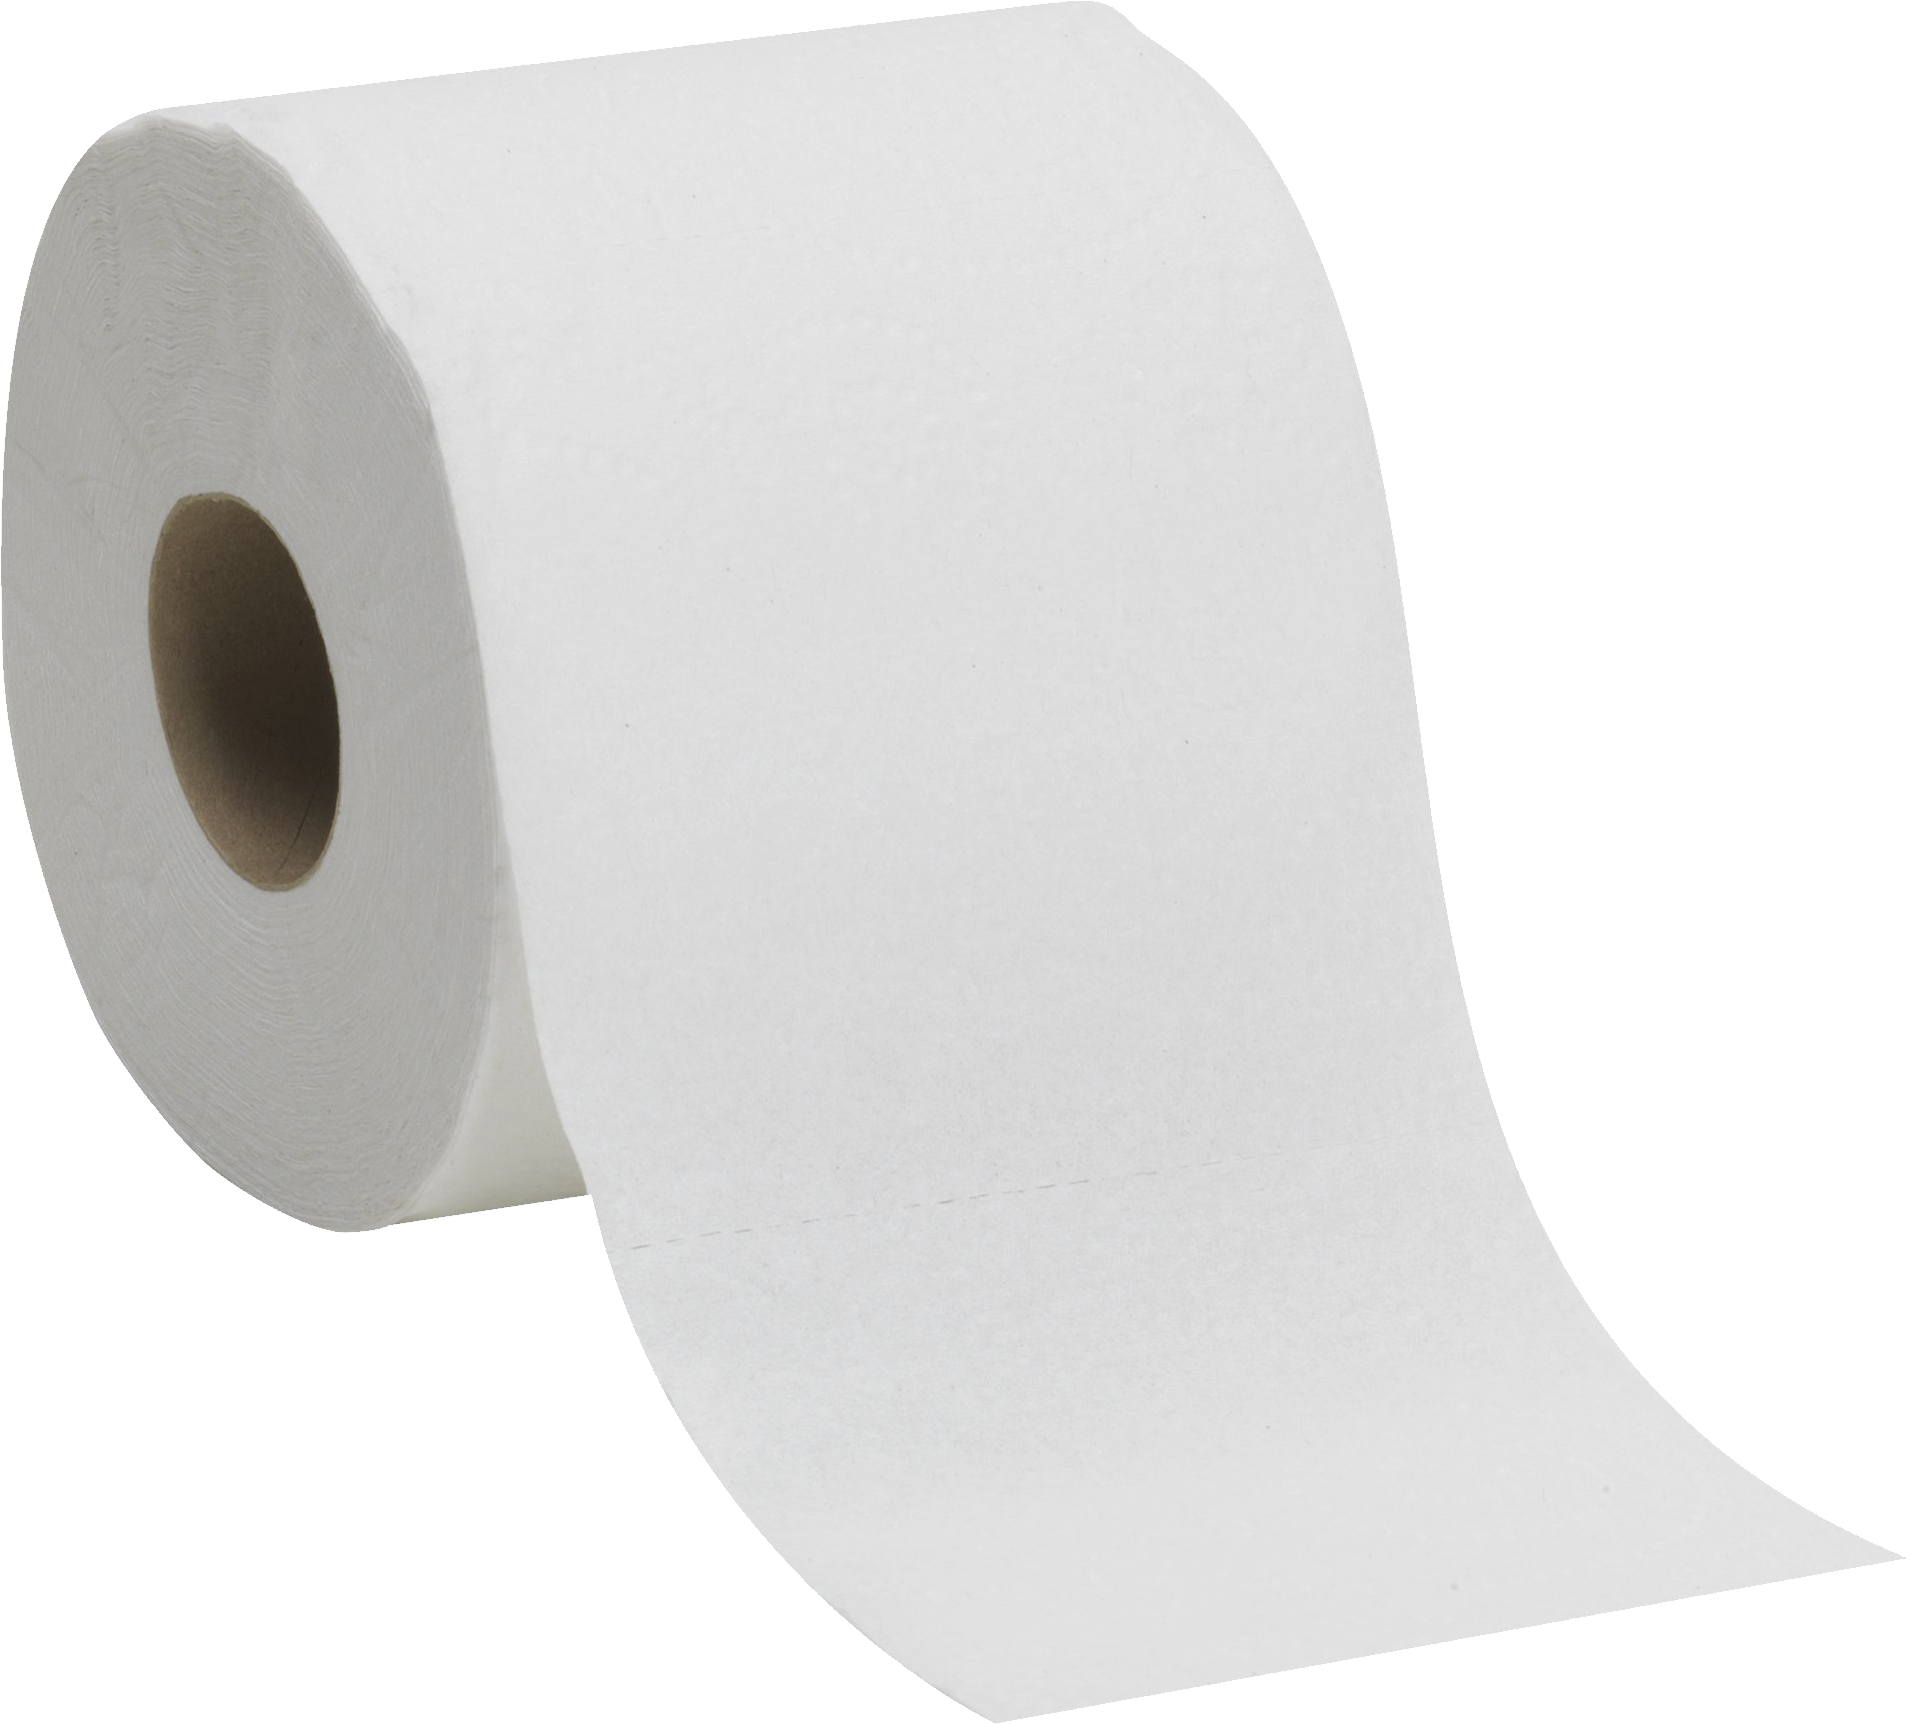 Toilet Paper Donald Trump Tra